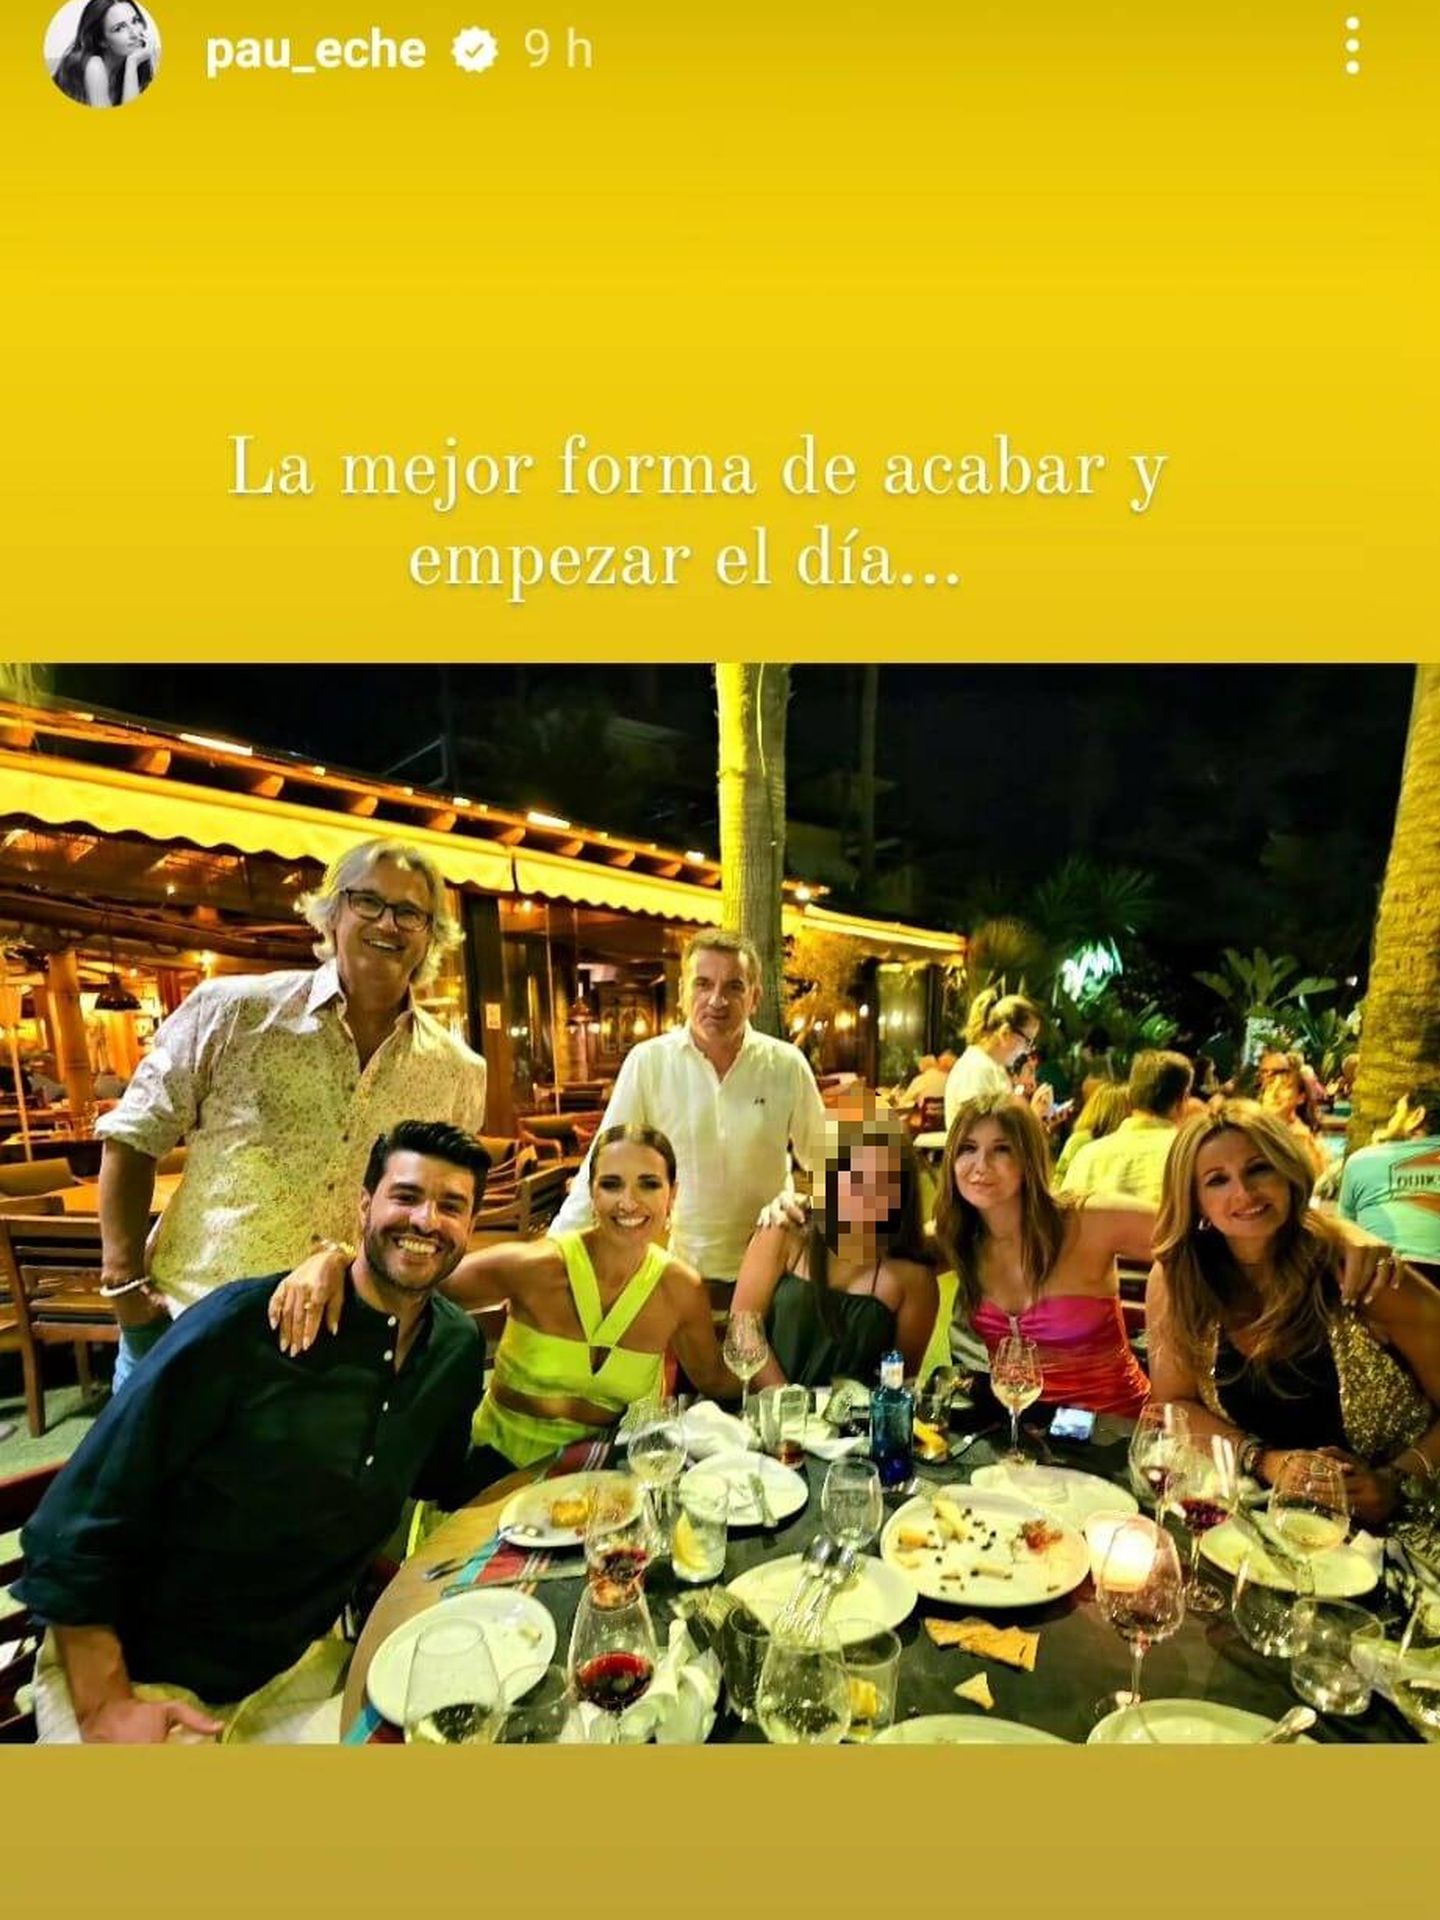 La asturiana salió a cenar con familia y amigos. (Instagram/@pau_eche)